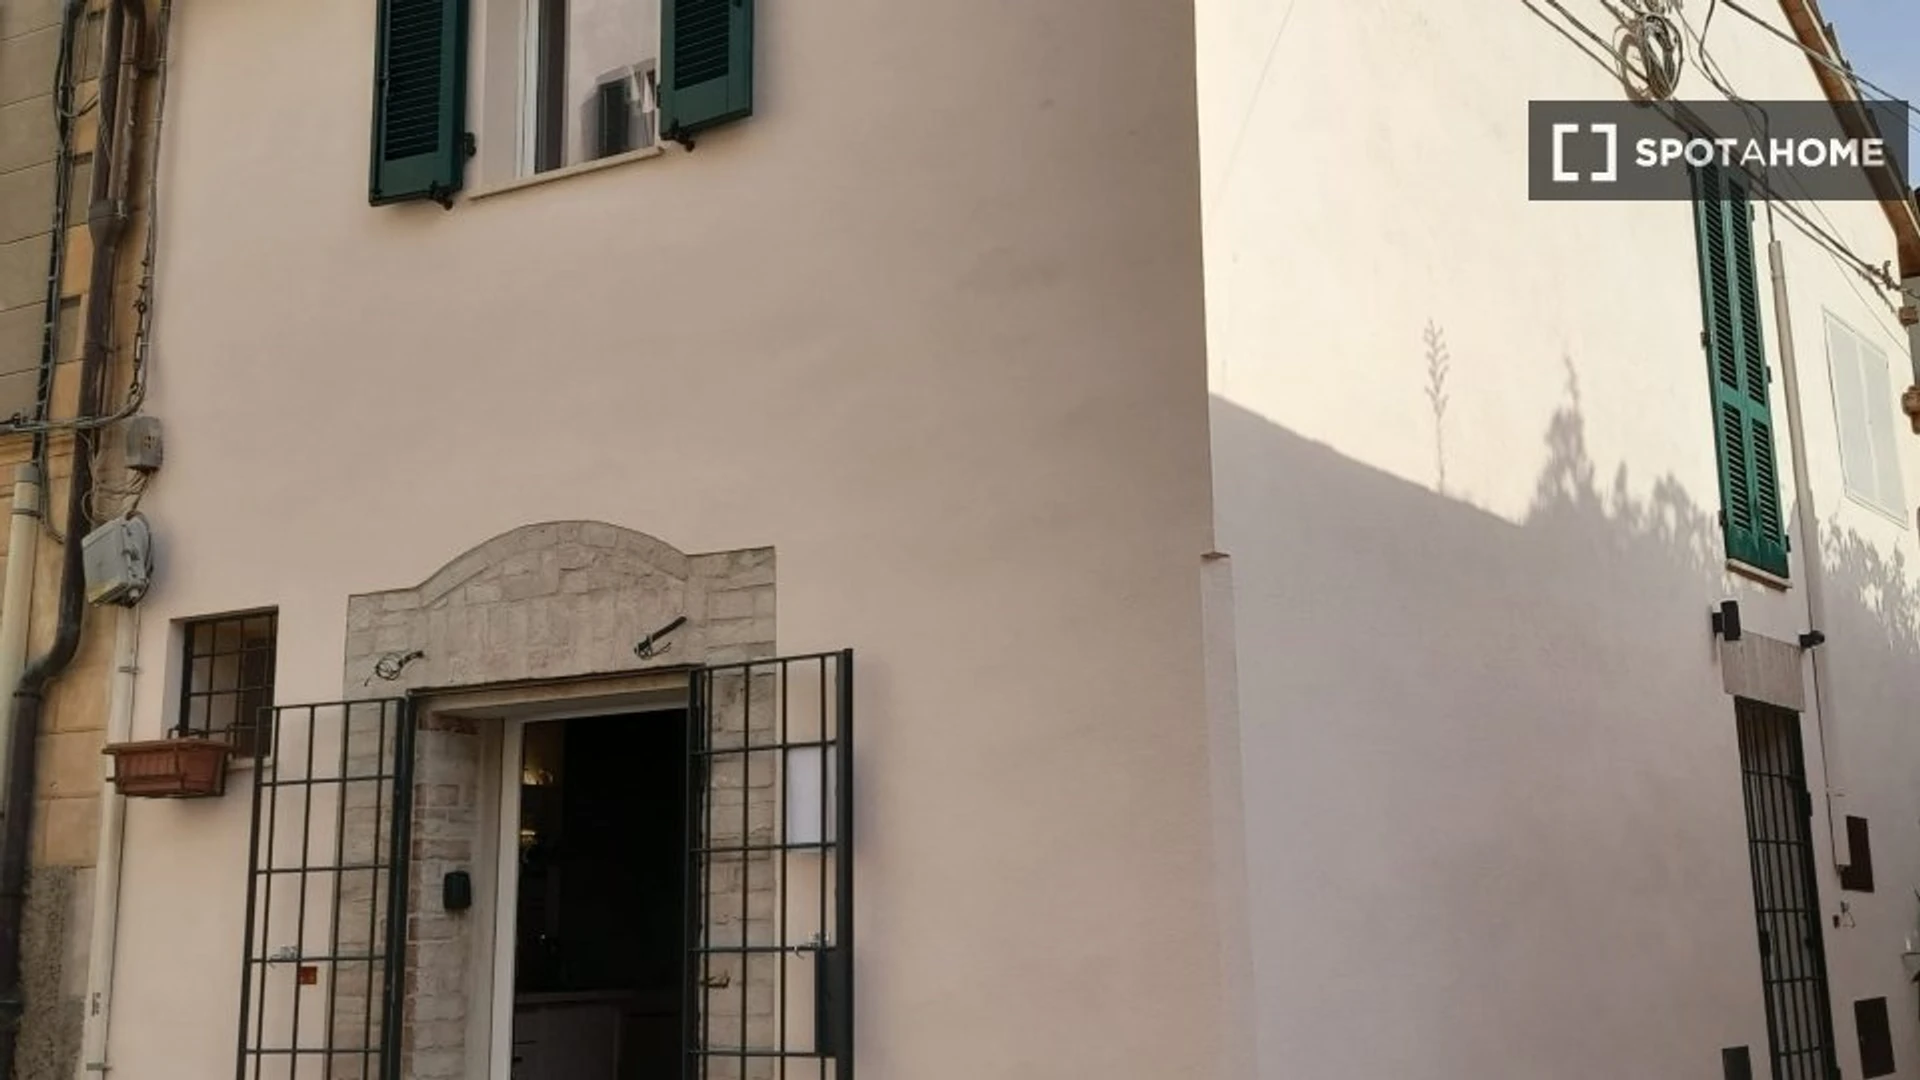 Logement situé dans le centre de Perugia